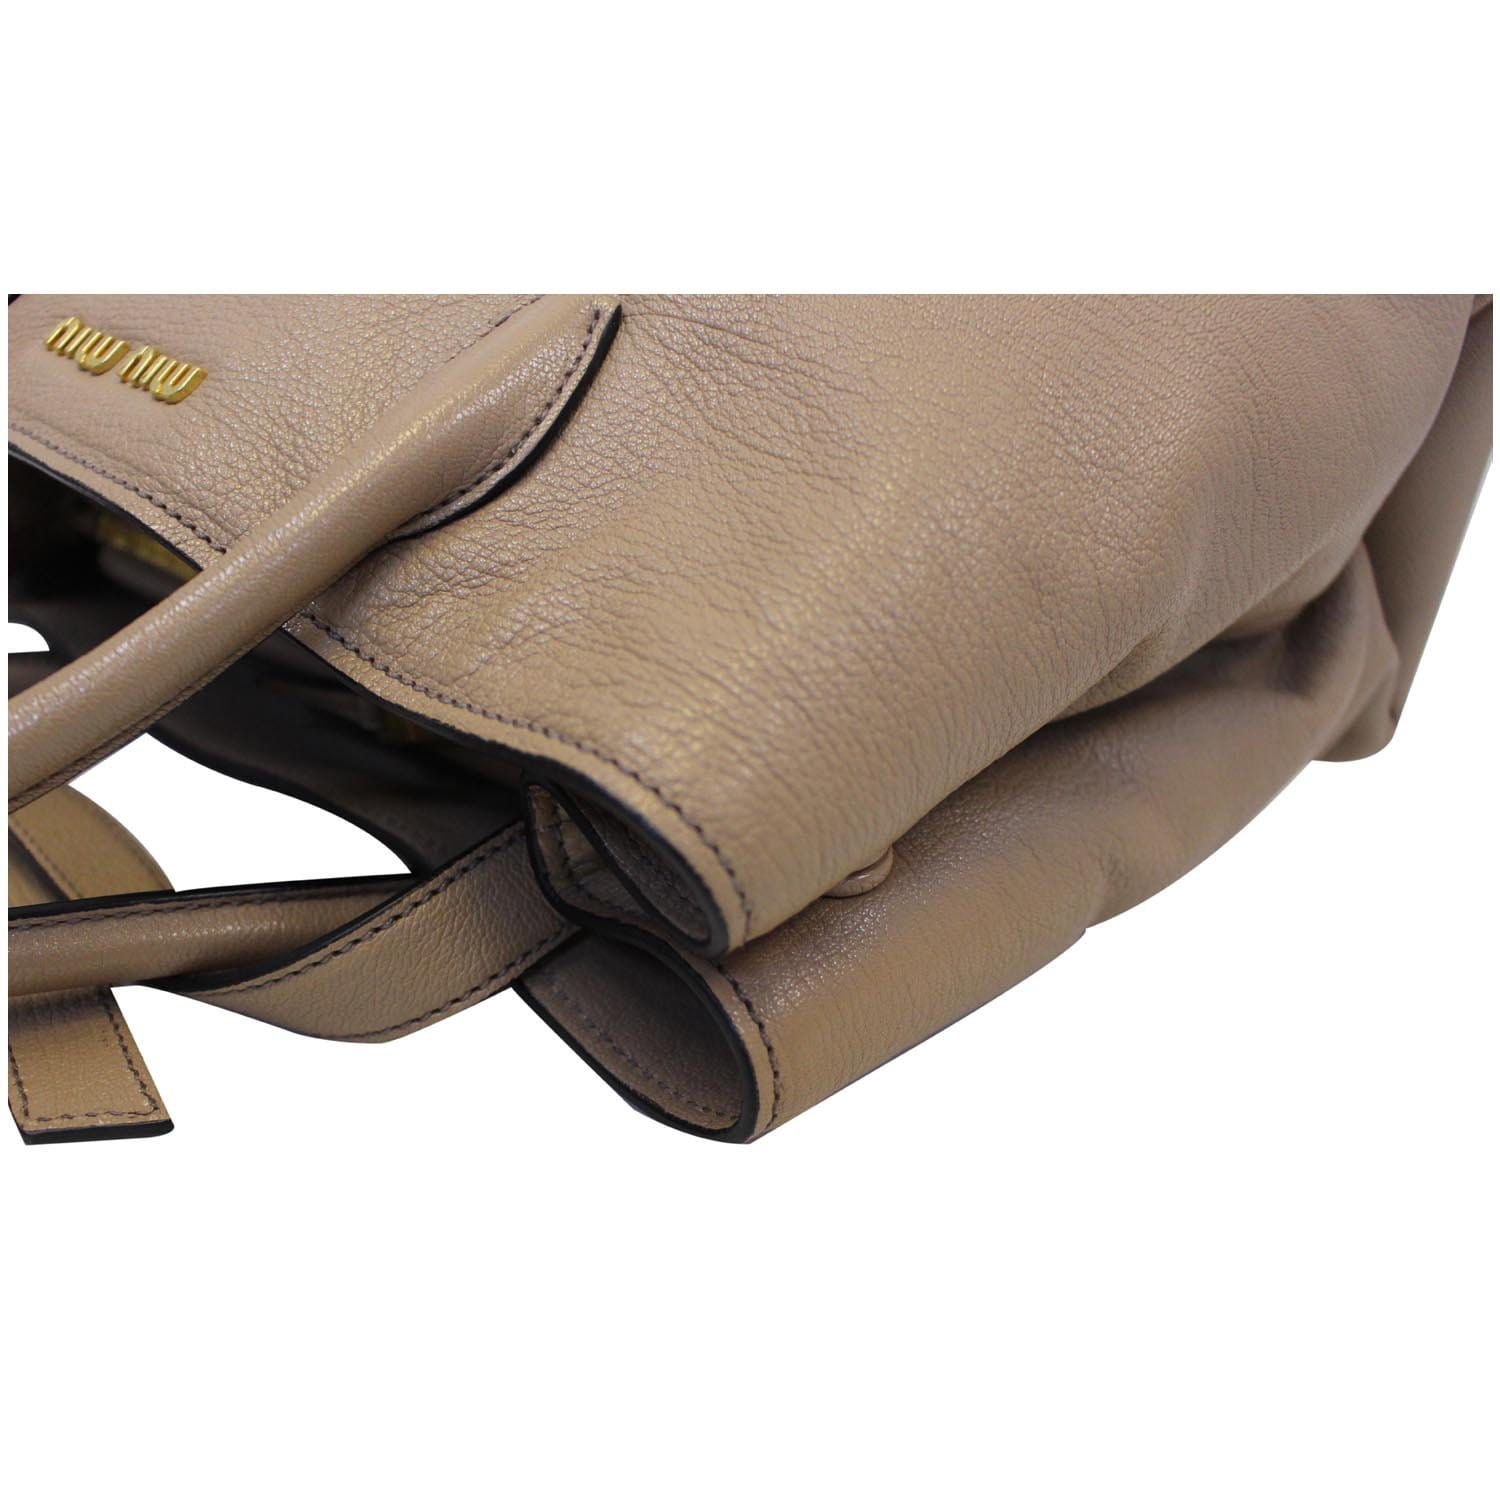 Madras leather shoulder bag